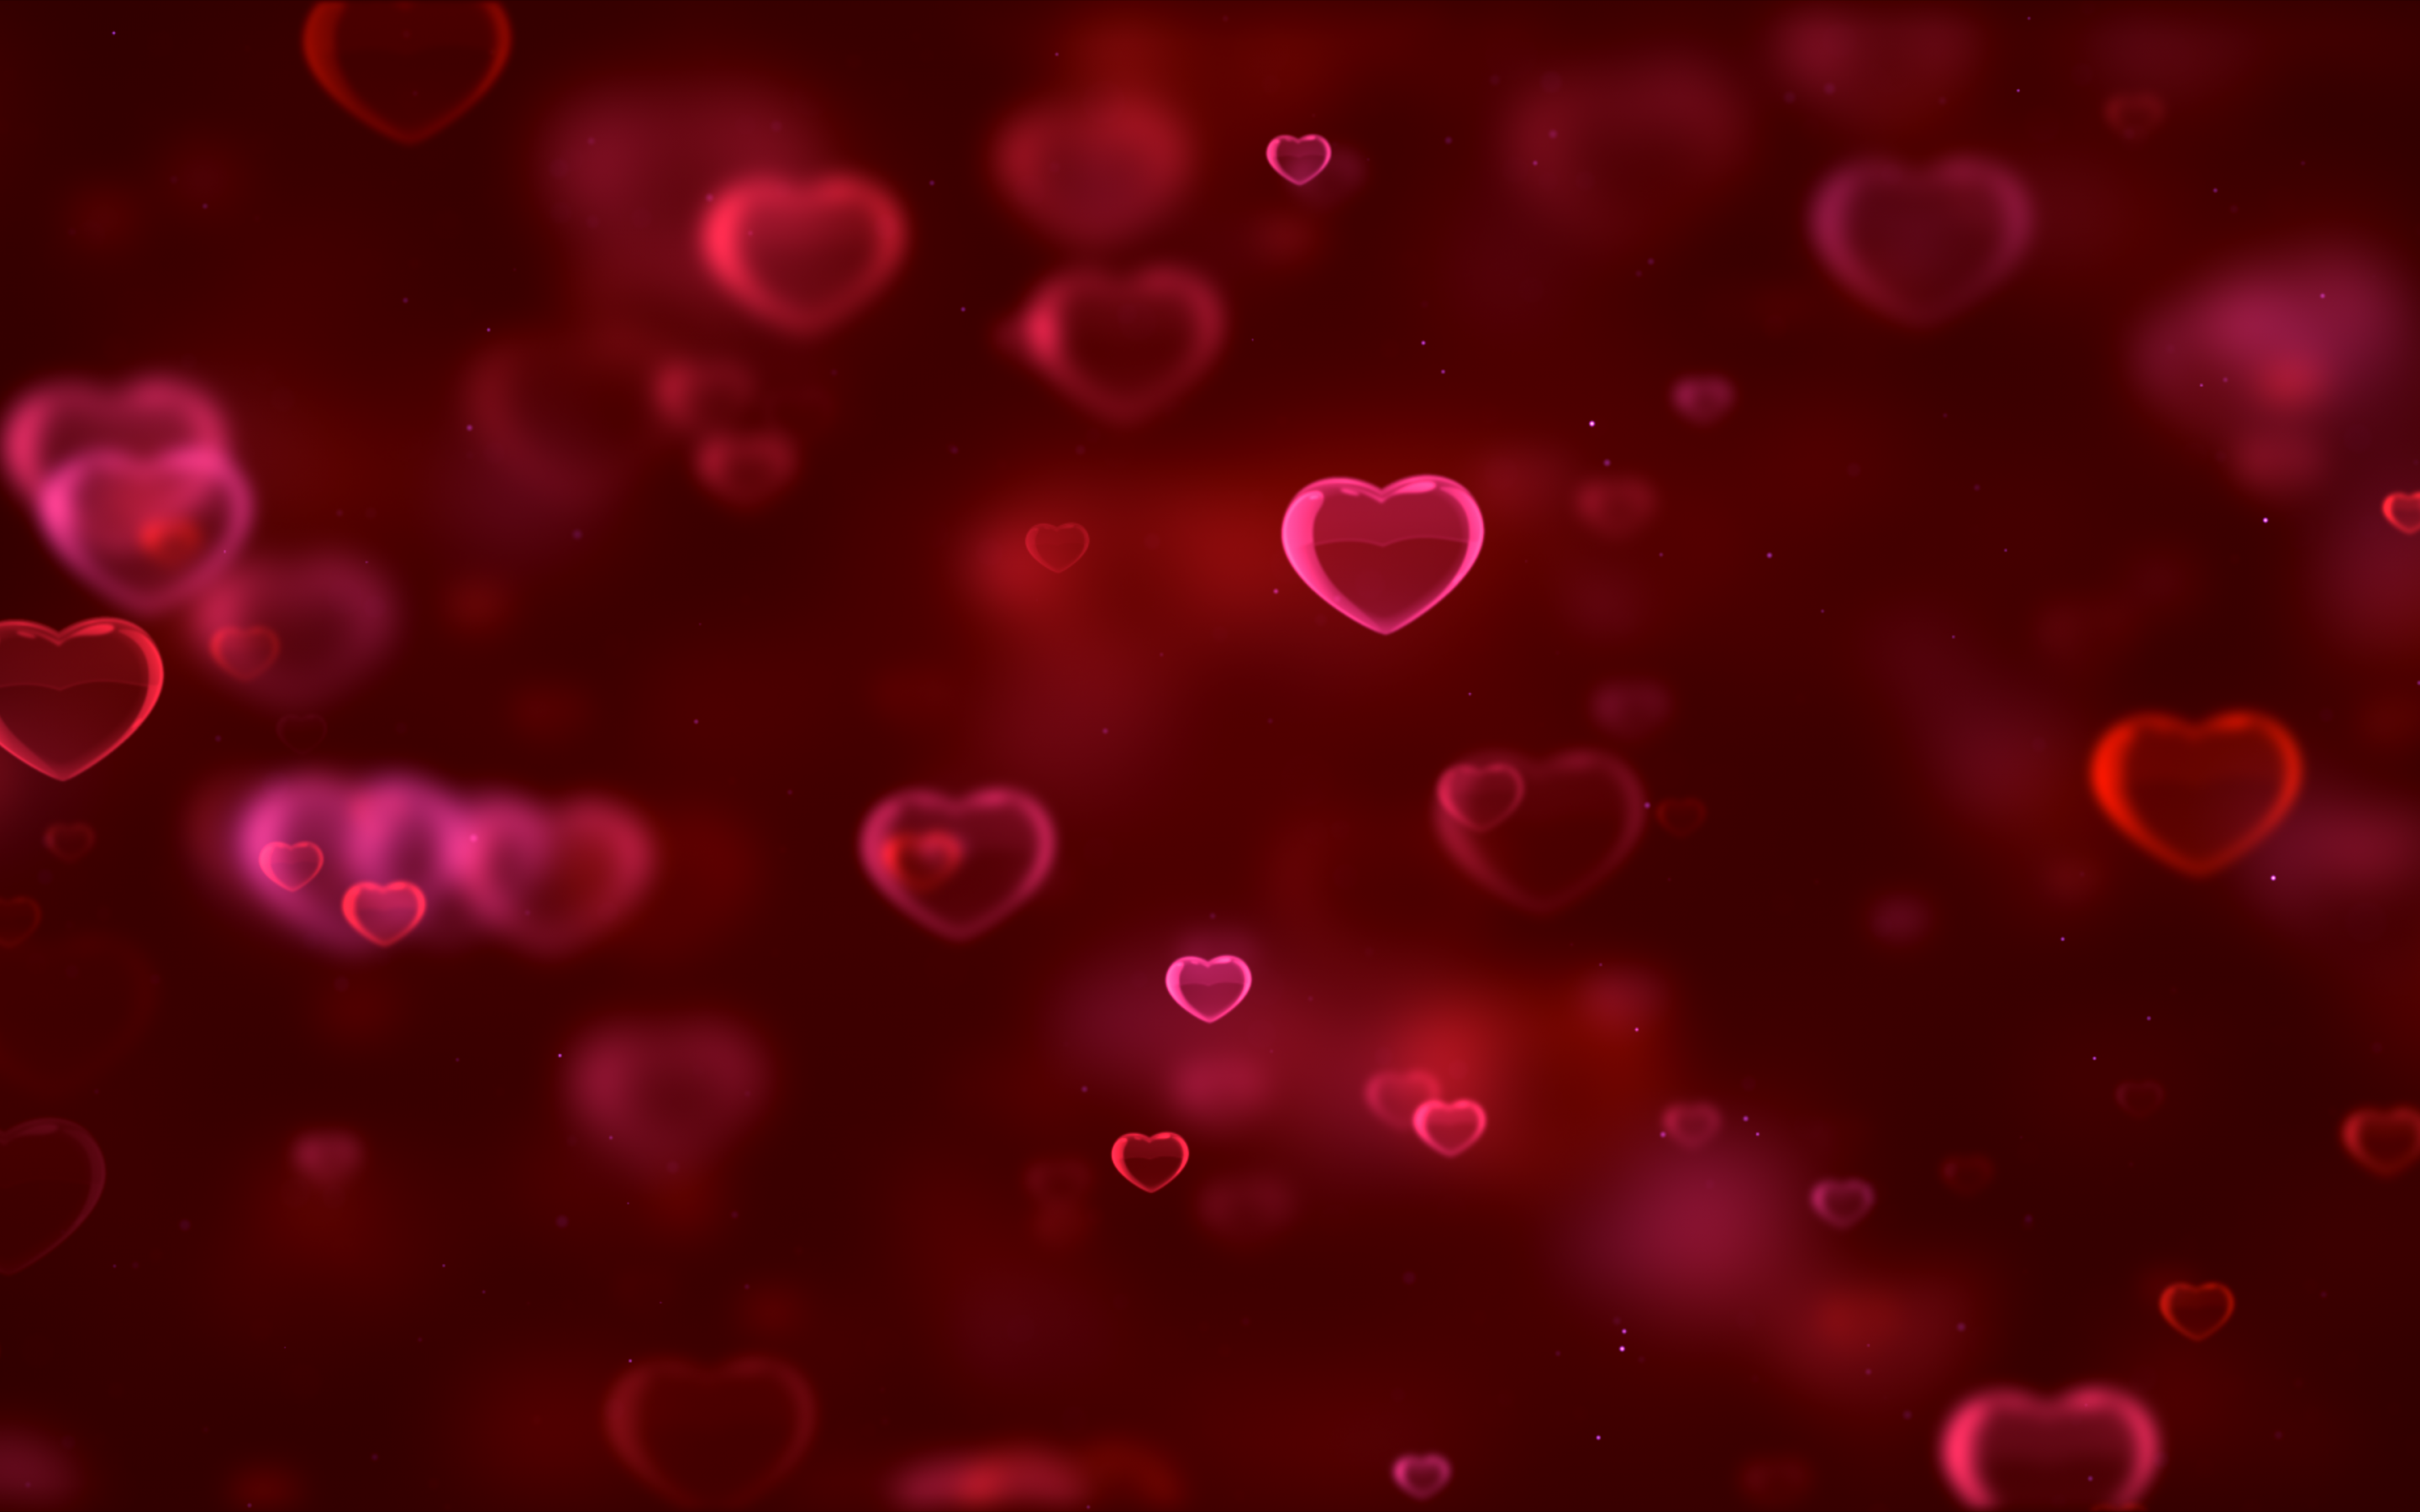 Bộ ảnh nền hình trái tim đầy màu sắc 4K là một cách tuyệt vời để thể hiện tình yêu của bạn. Thiết kế đẹp mắt với gam màu đỏ sẽ đem lại cảm giác ấm áp và yêu đời cho mọi người.